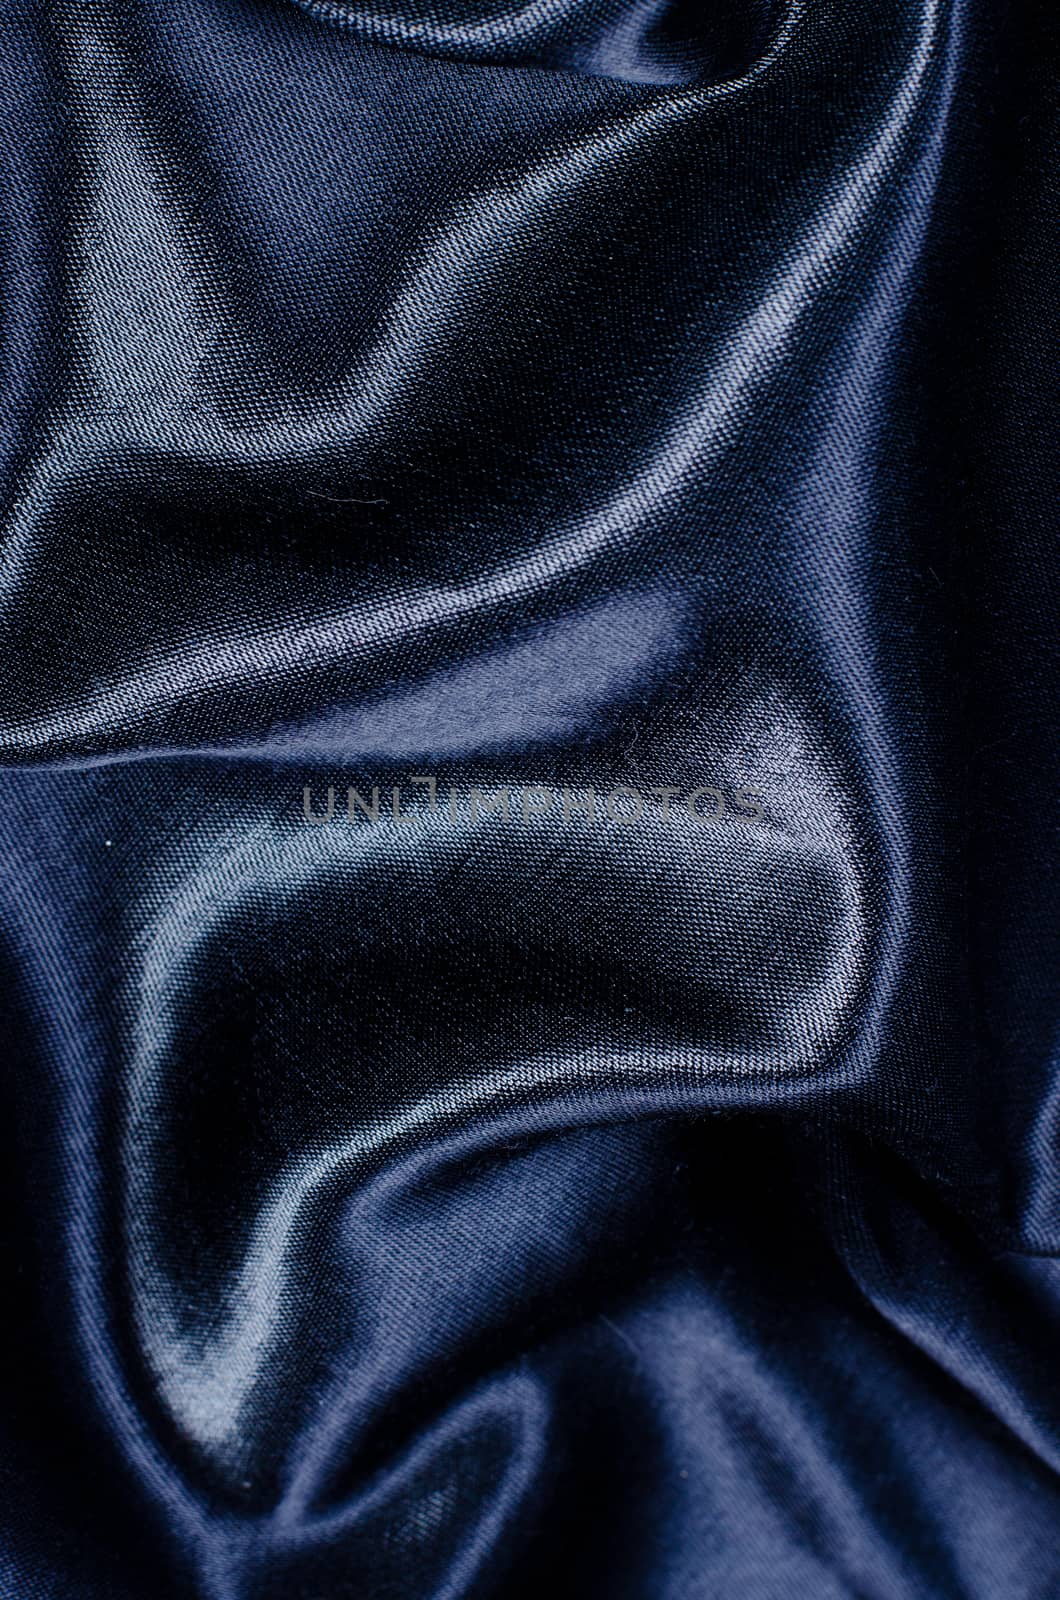 blue silk satin background